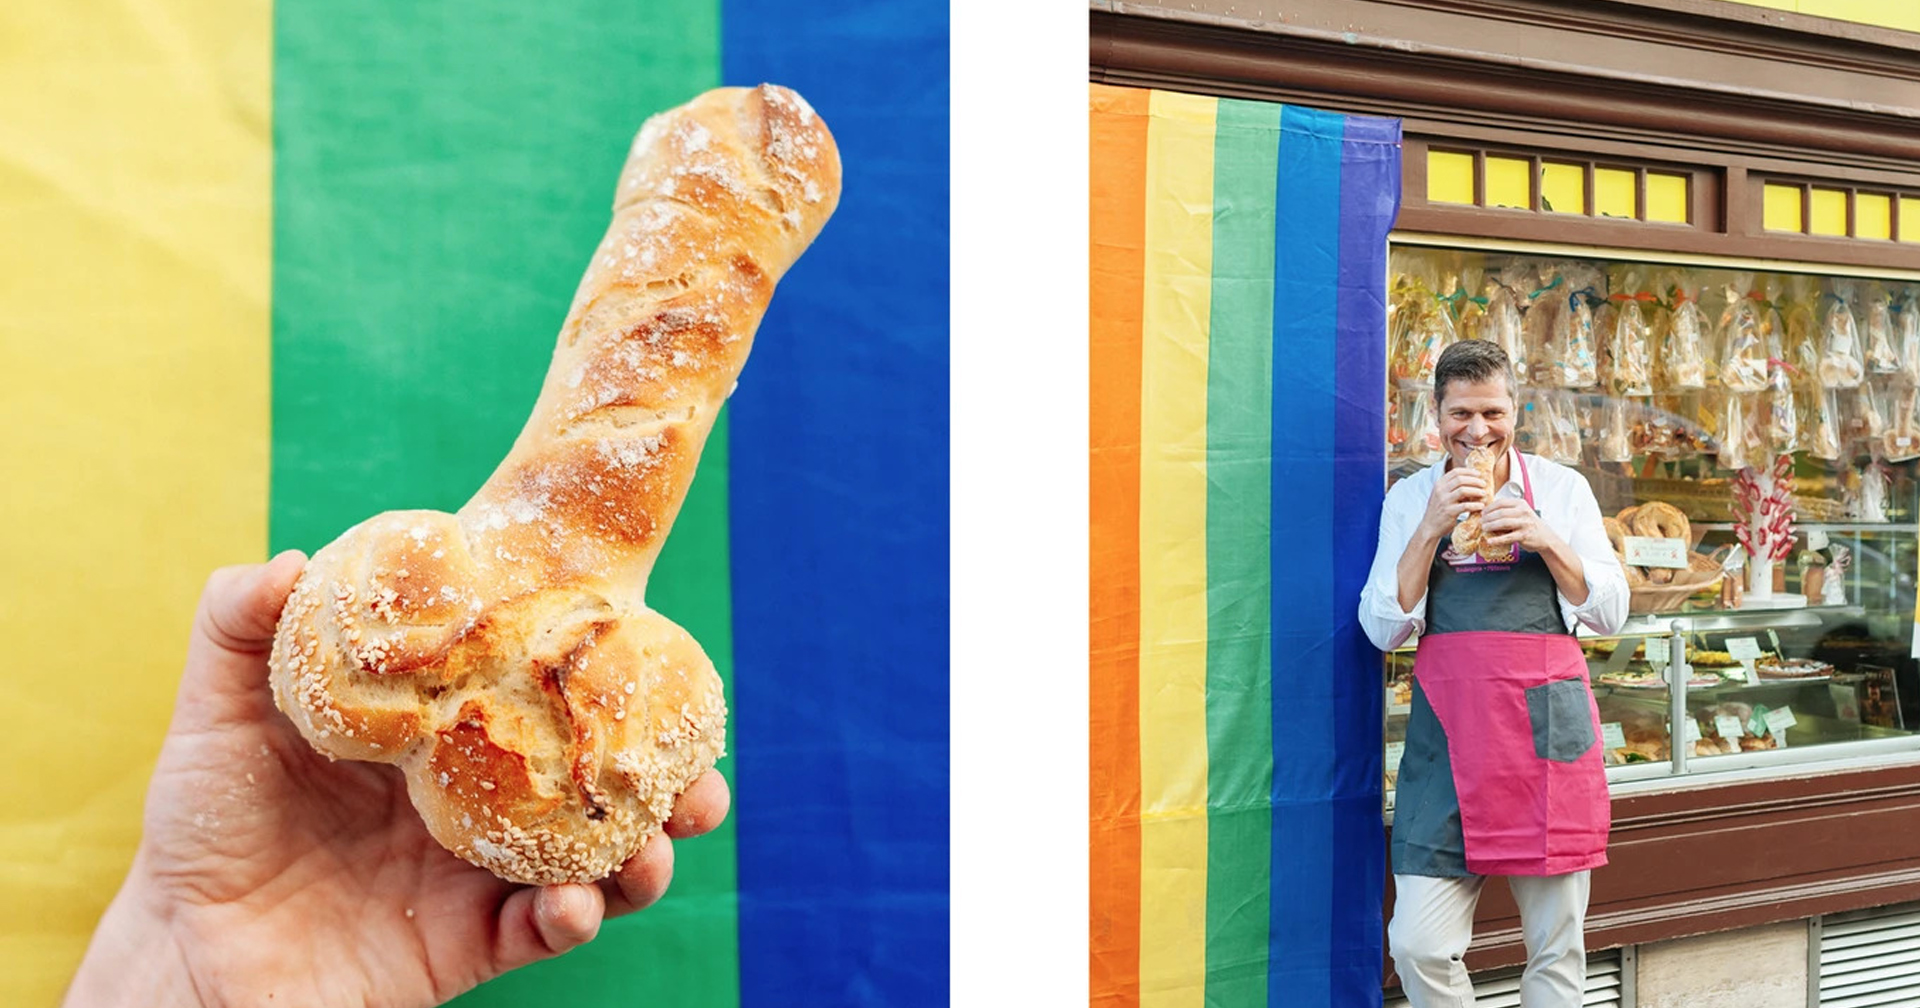 ร้านขนมปังในปารีส ทำบาแก็ตรูปทรงคล้าย ‘อวัยวะเพศชาย’ จนดังไปทั่วโลก